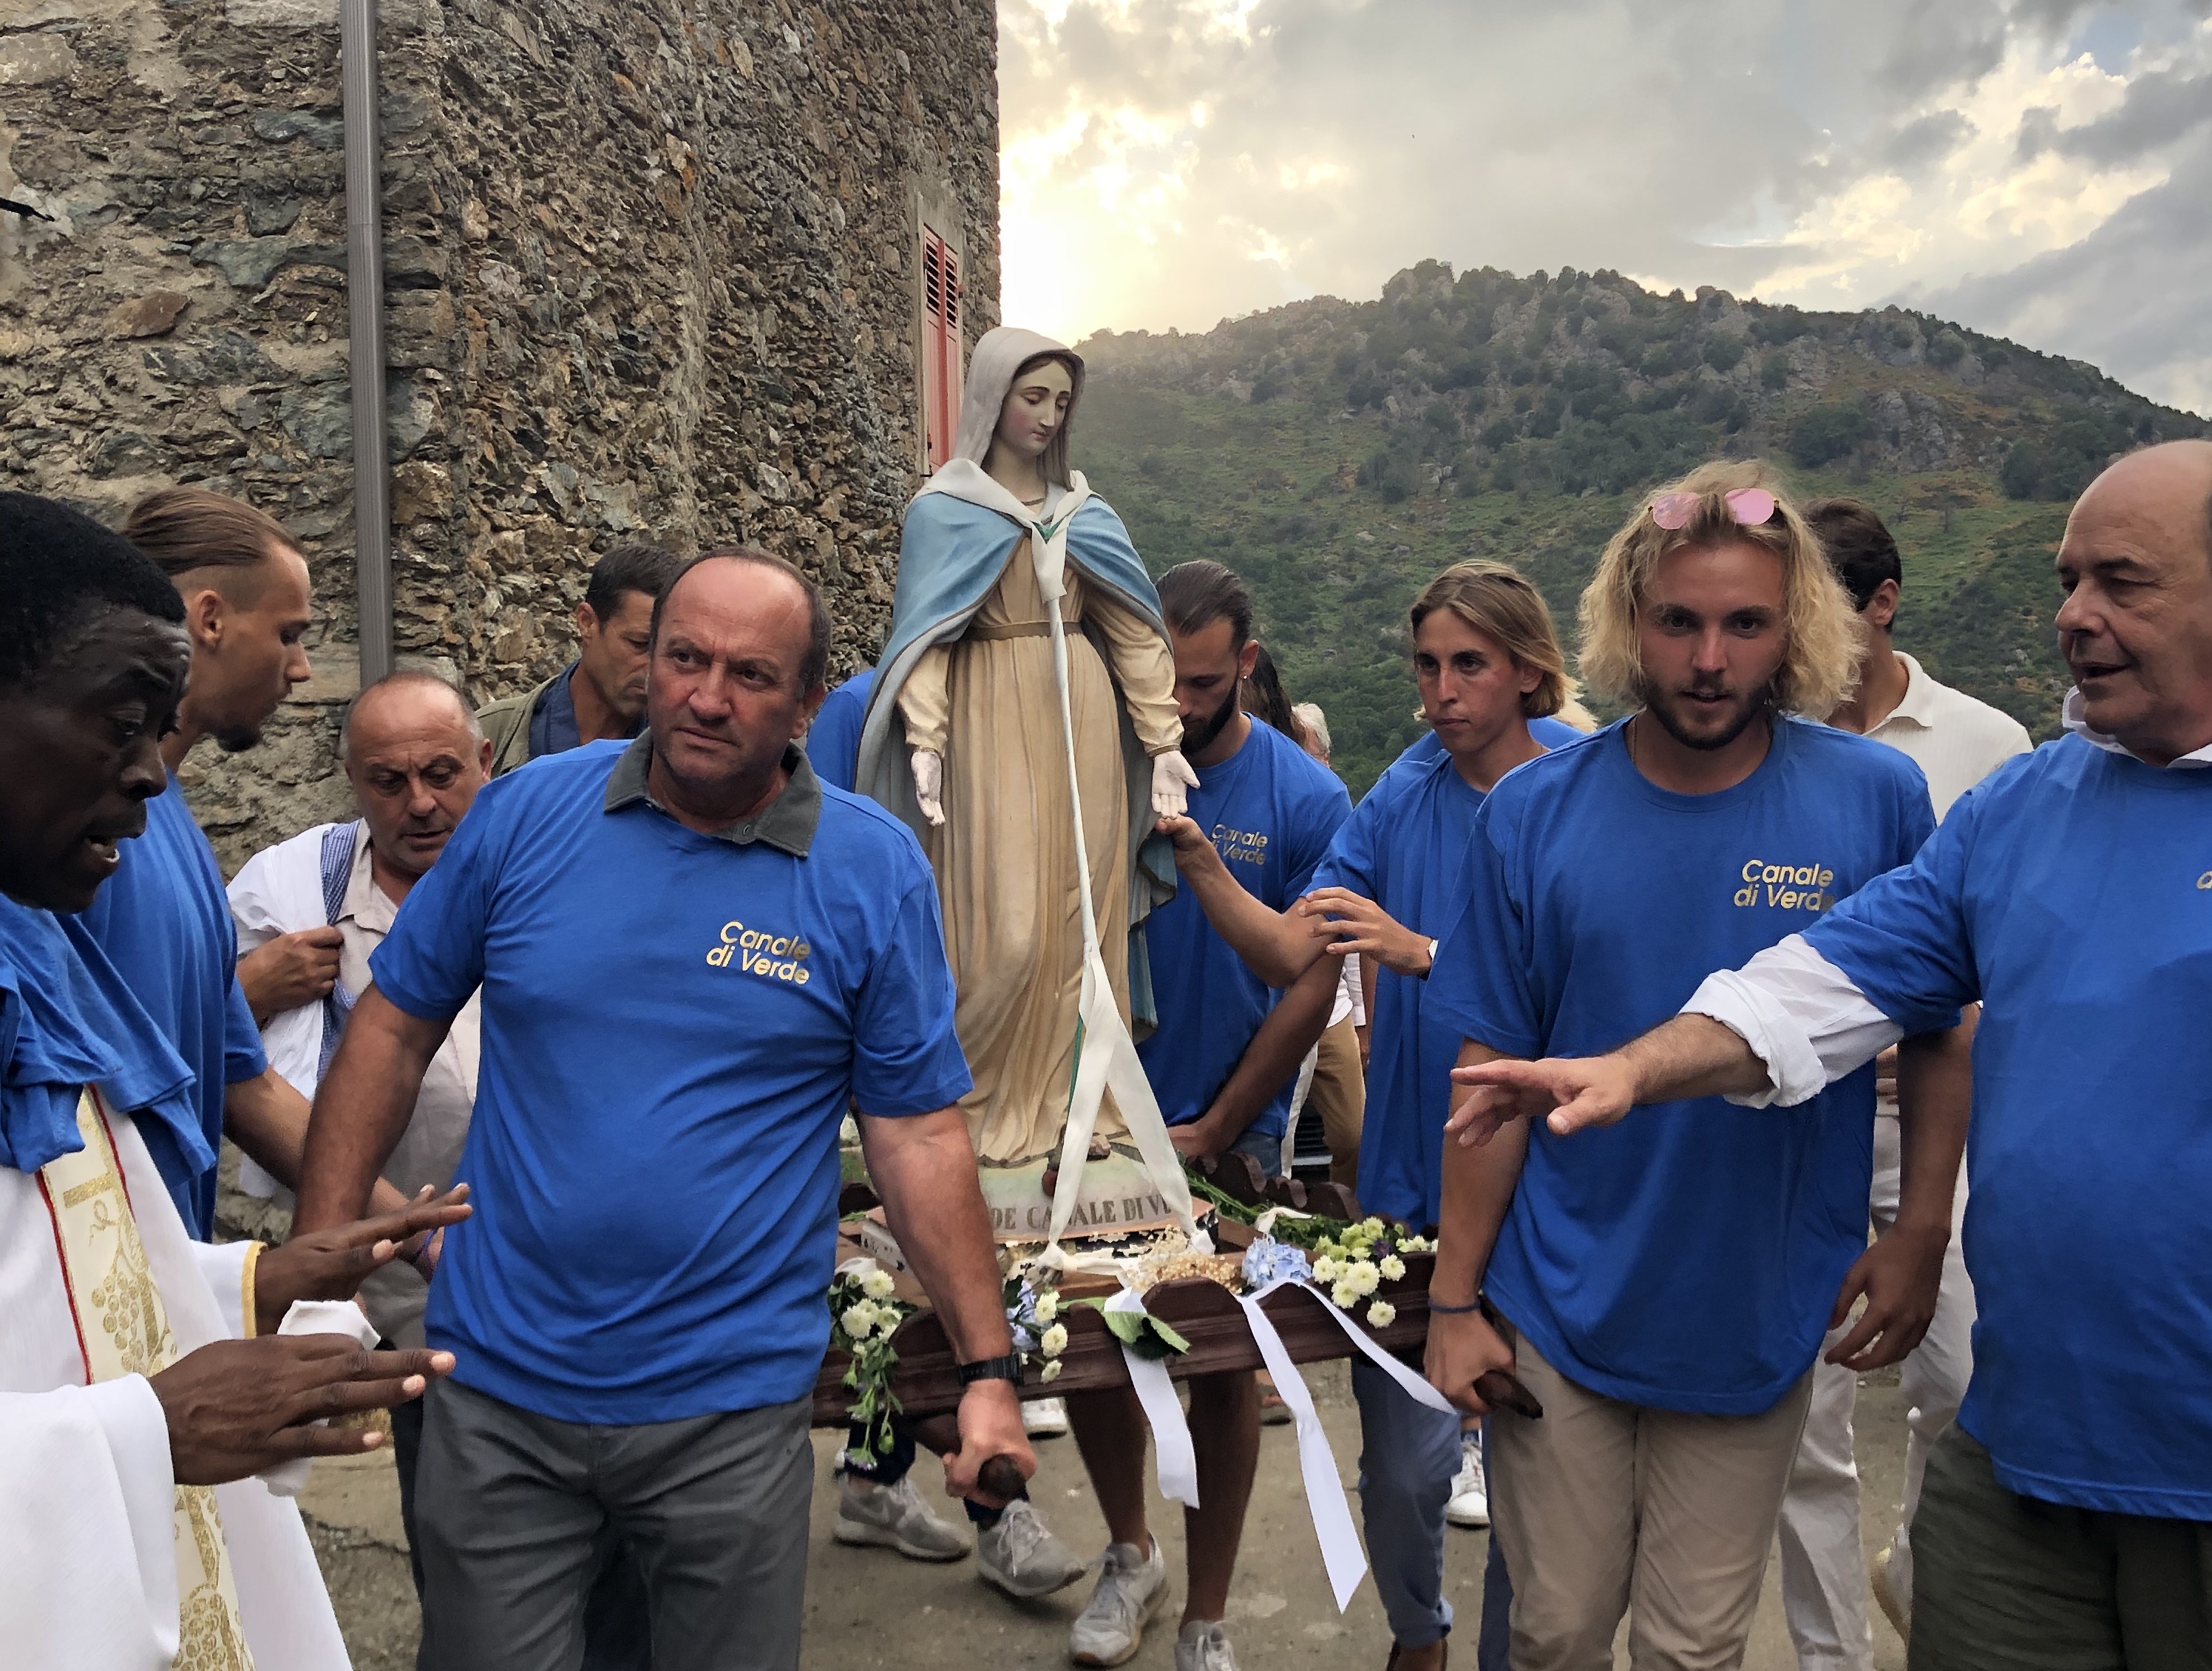 Le 15 août à Canale-di-Verde : une tradition de partage !